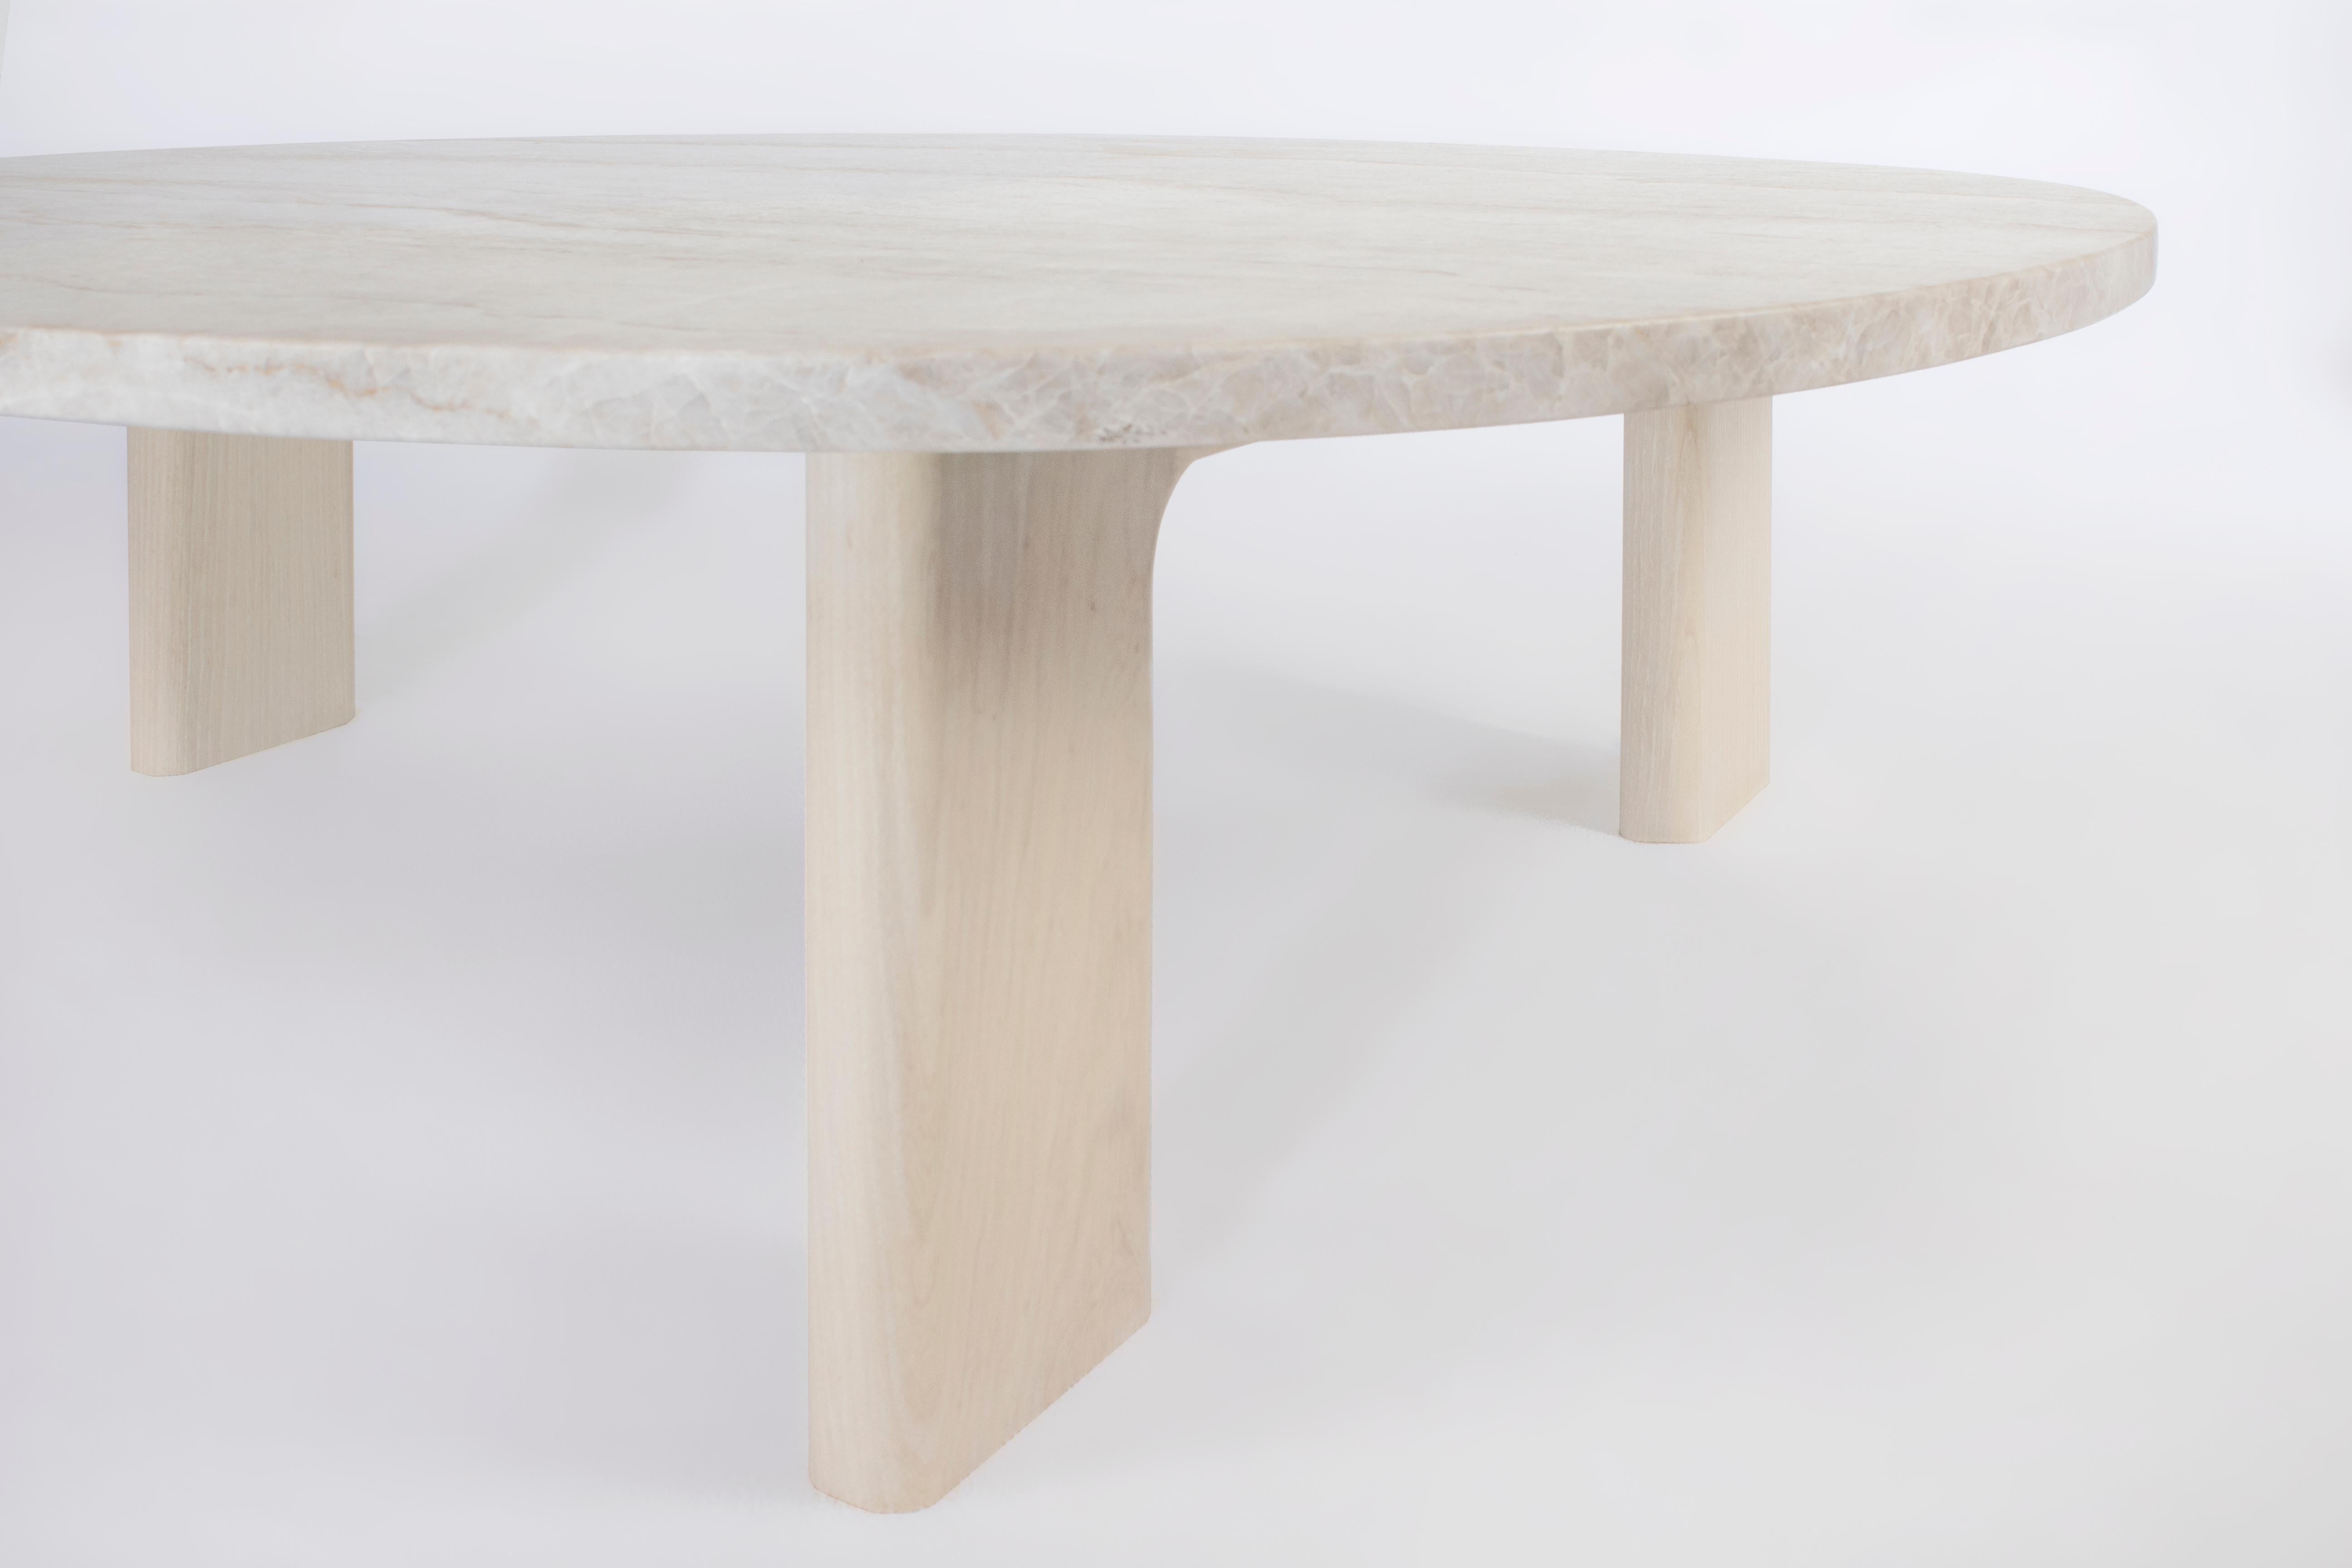 La table Vesta est un équilibre entre confort et raffinement. Un plateau en marbre aux formes organiques et incurvées repose sur trois pieds en bois massif, combinant la sensation décontractée du bois massif avec une surface en marbre raffinée et